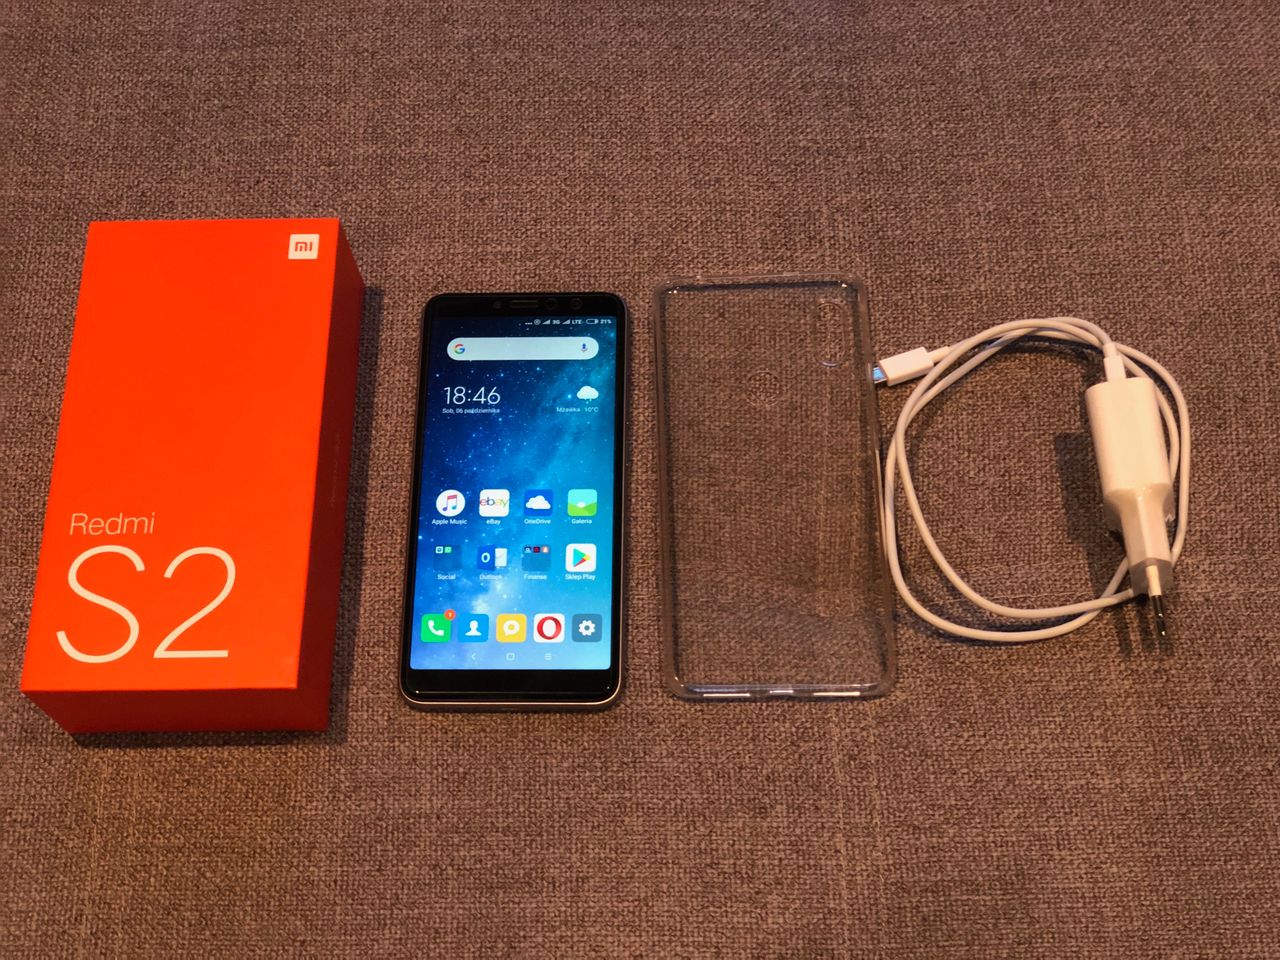 Piekło zamarzło, kupiłem telefon Xiaomi! - Zawartość pudełka.